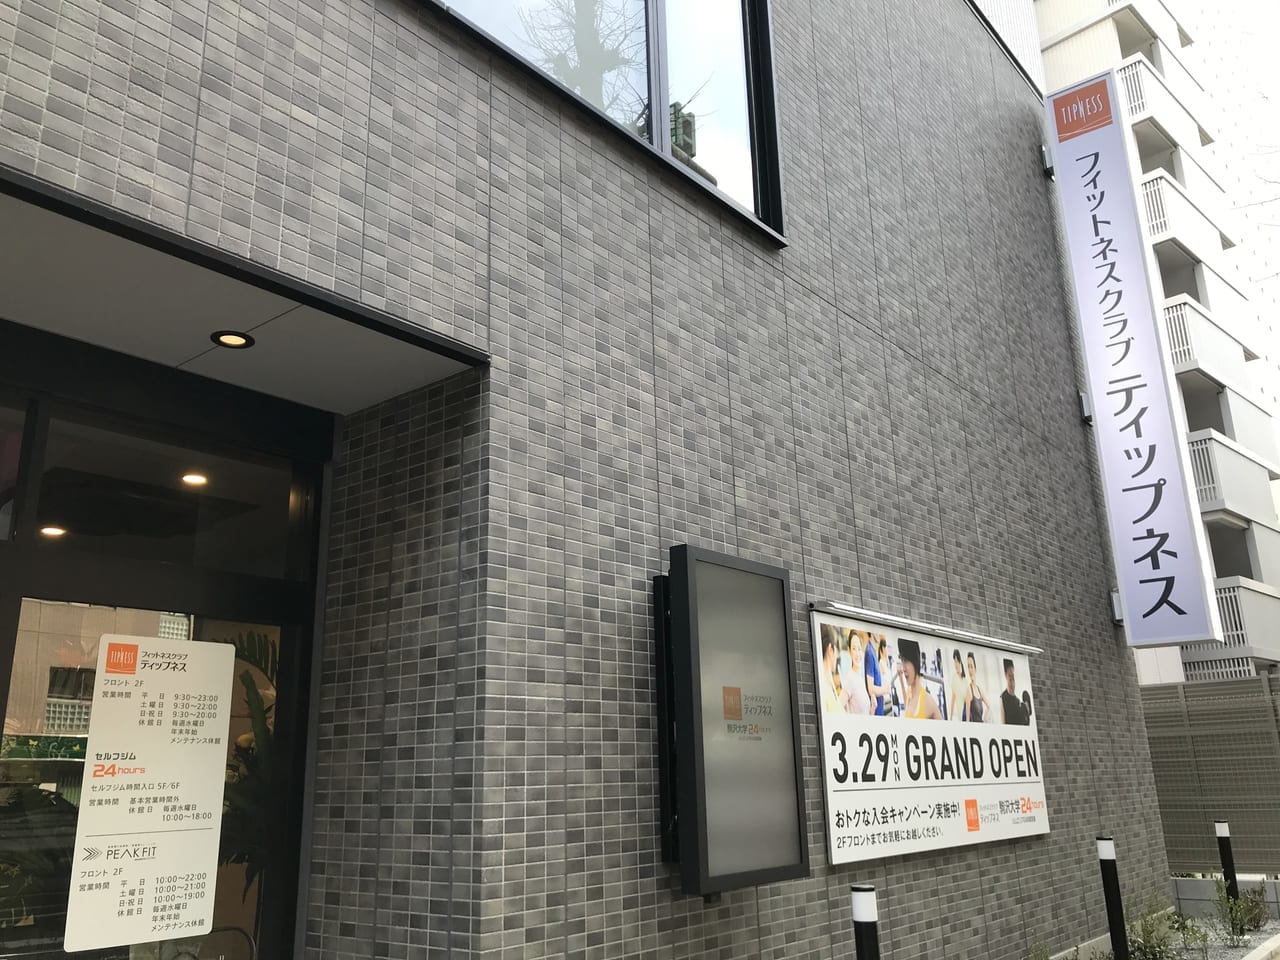 世田谷区ティップネス駒沢大学店2021年3月29日オープン